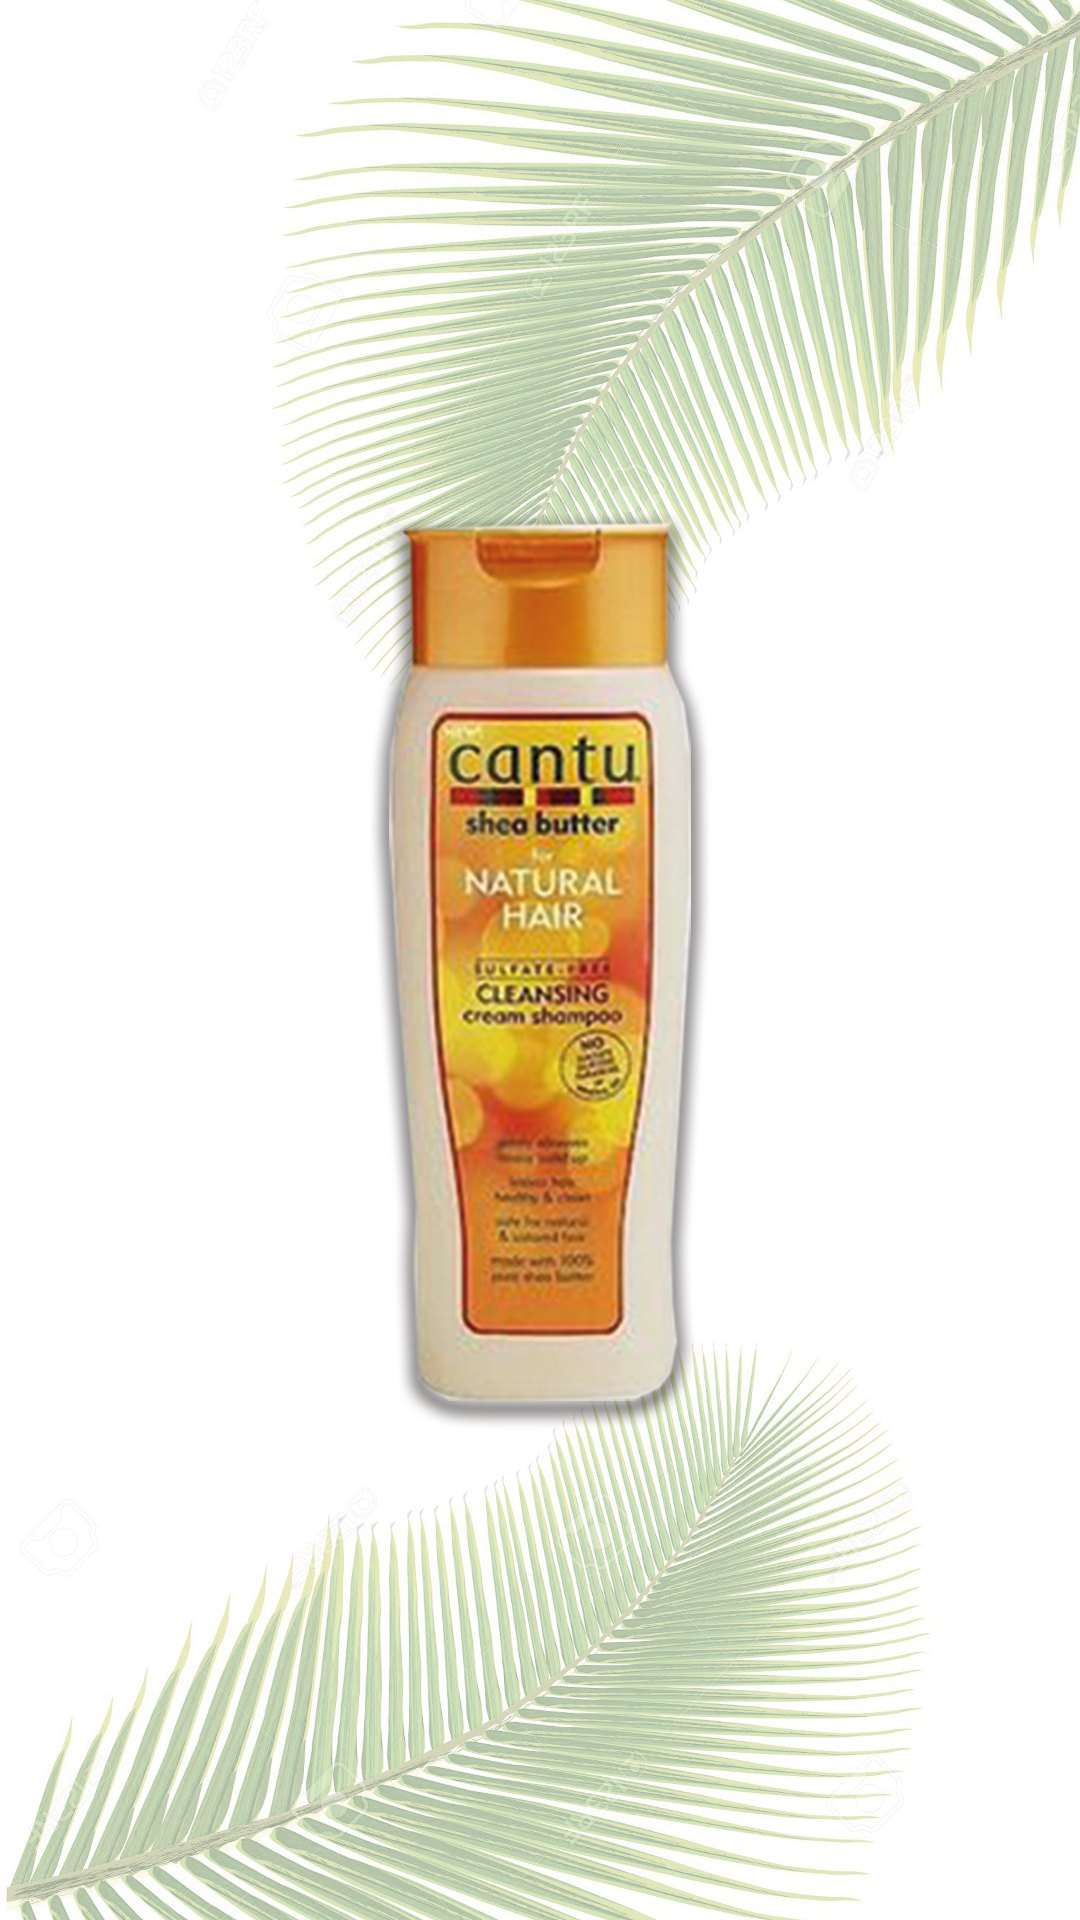 CANTU SHEA BUTTER Cleansing Cream Shampoo